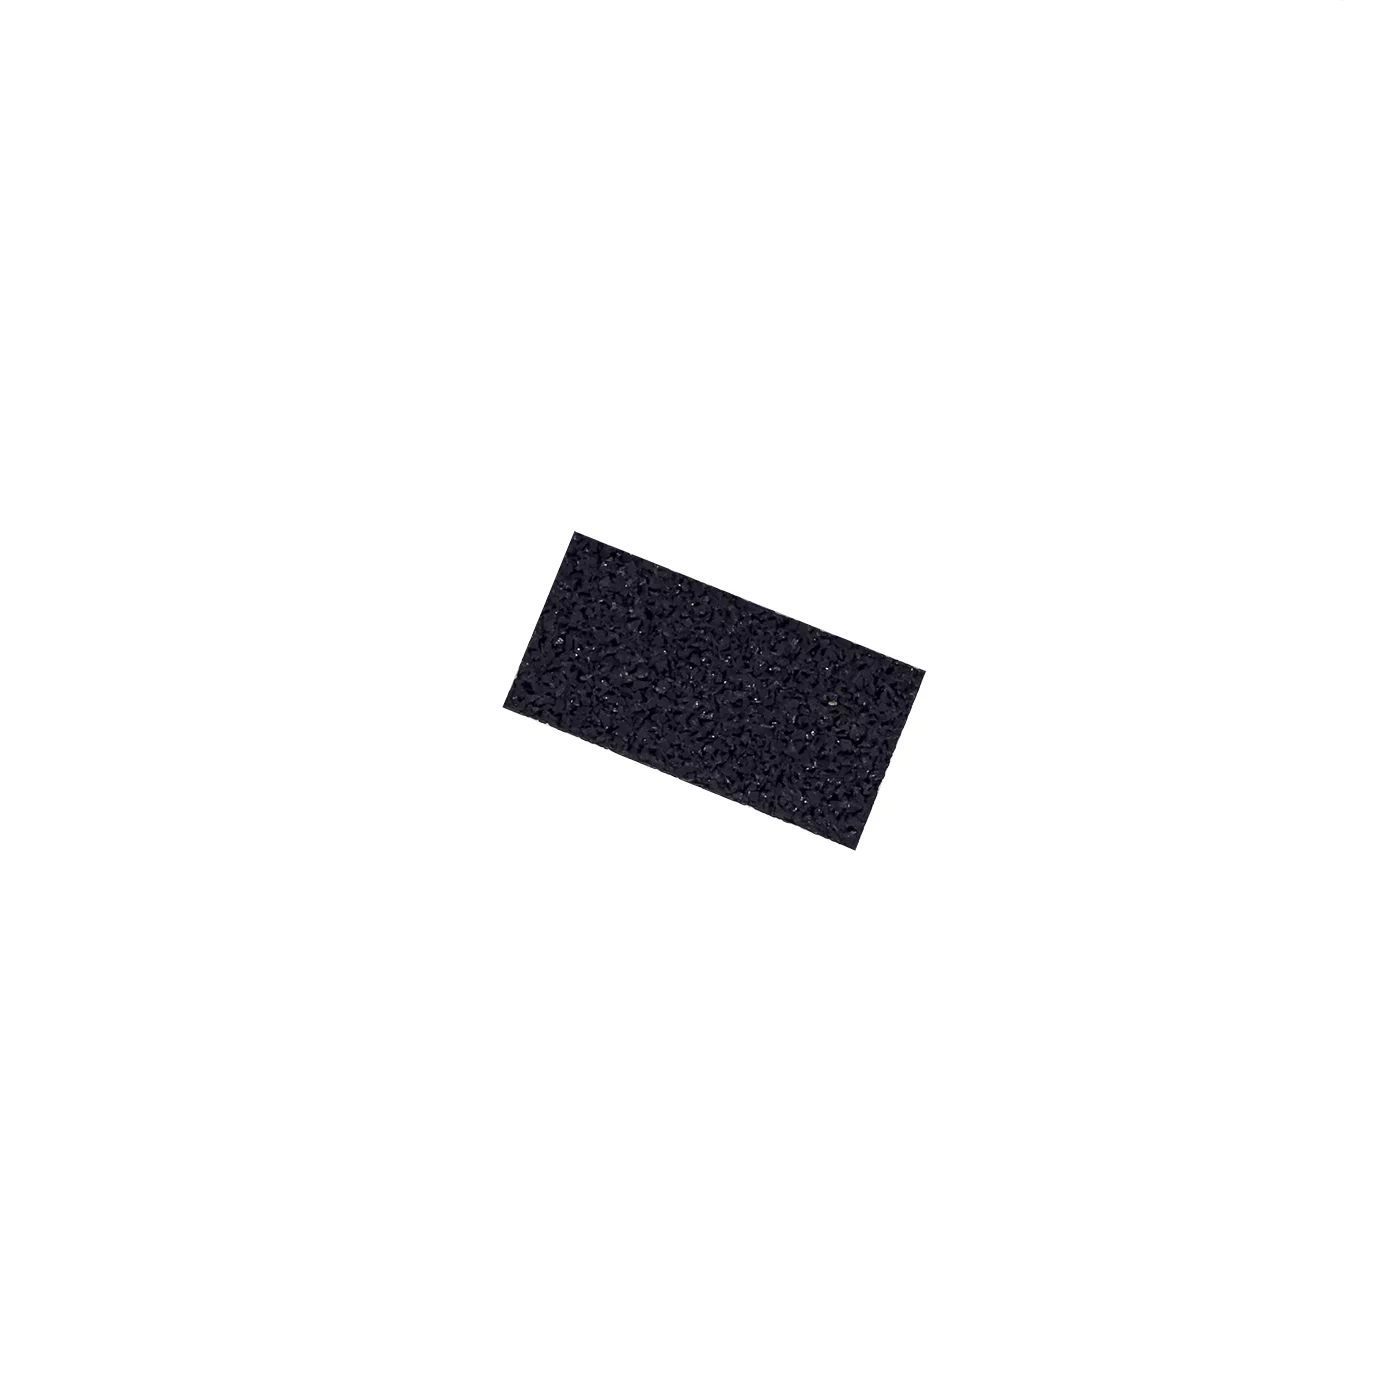 Gumová univerzálna podložka FLOMA UniPad - dĺžka 10 cm, šírka 5 cm, výška 0,3 cm